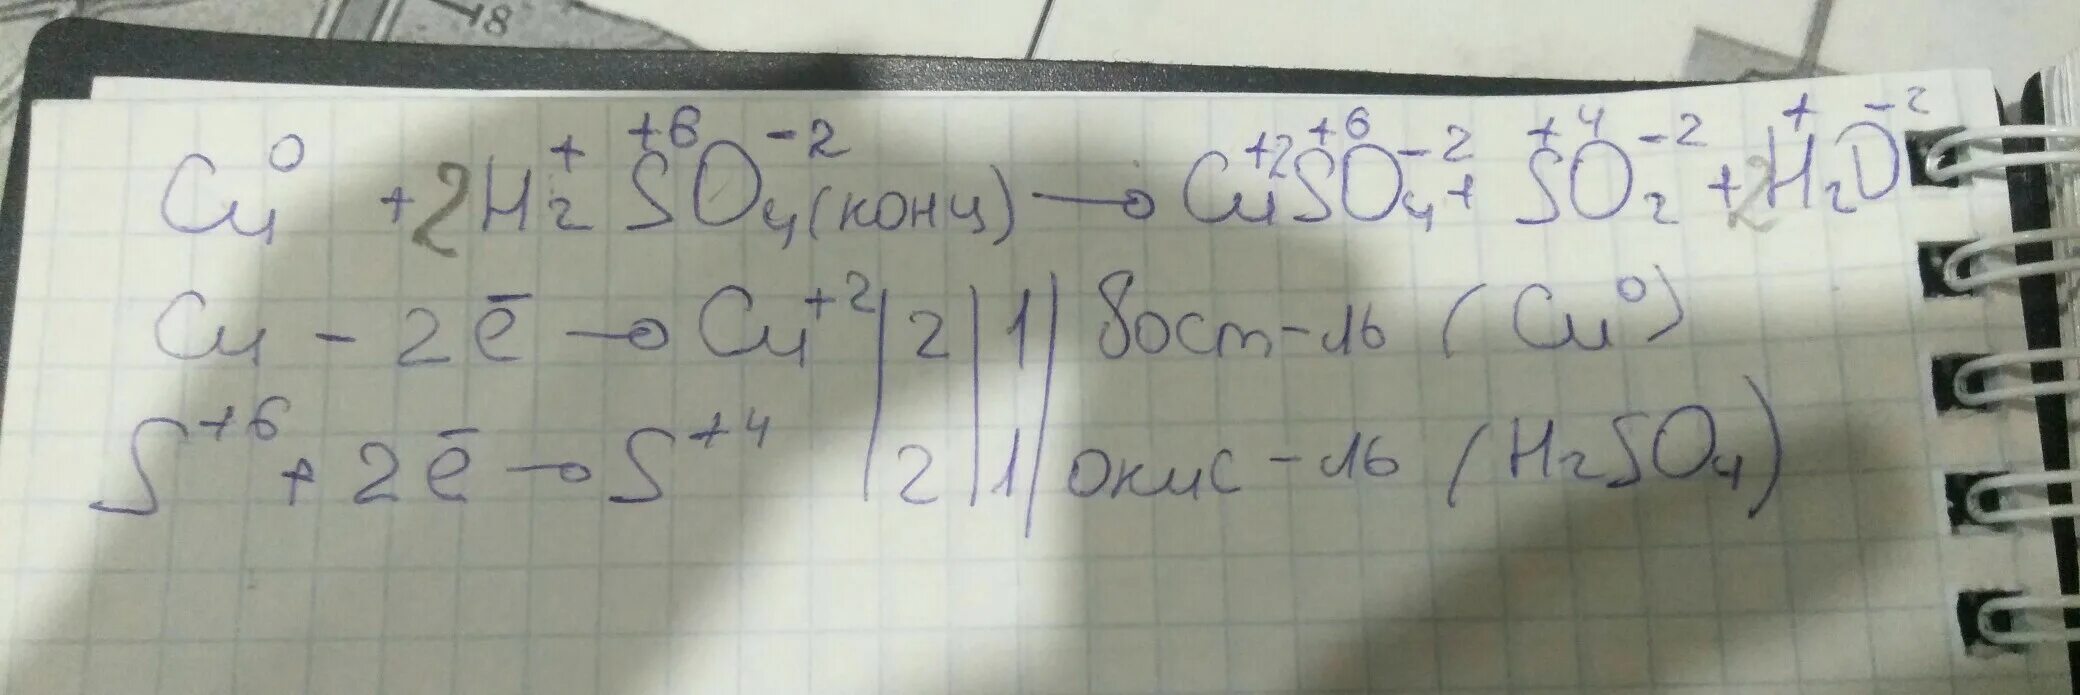 Cu h2so4 cuso4 so2 h2o окислительно восстановительная реакция. Cu h2so4 конц. Cu+h2so4 электронный баланс.